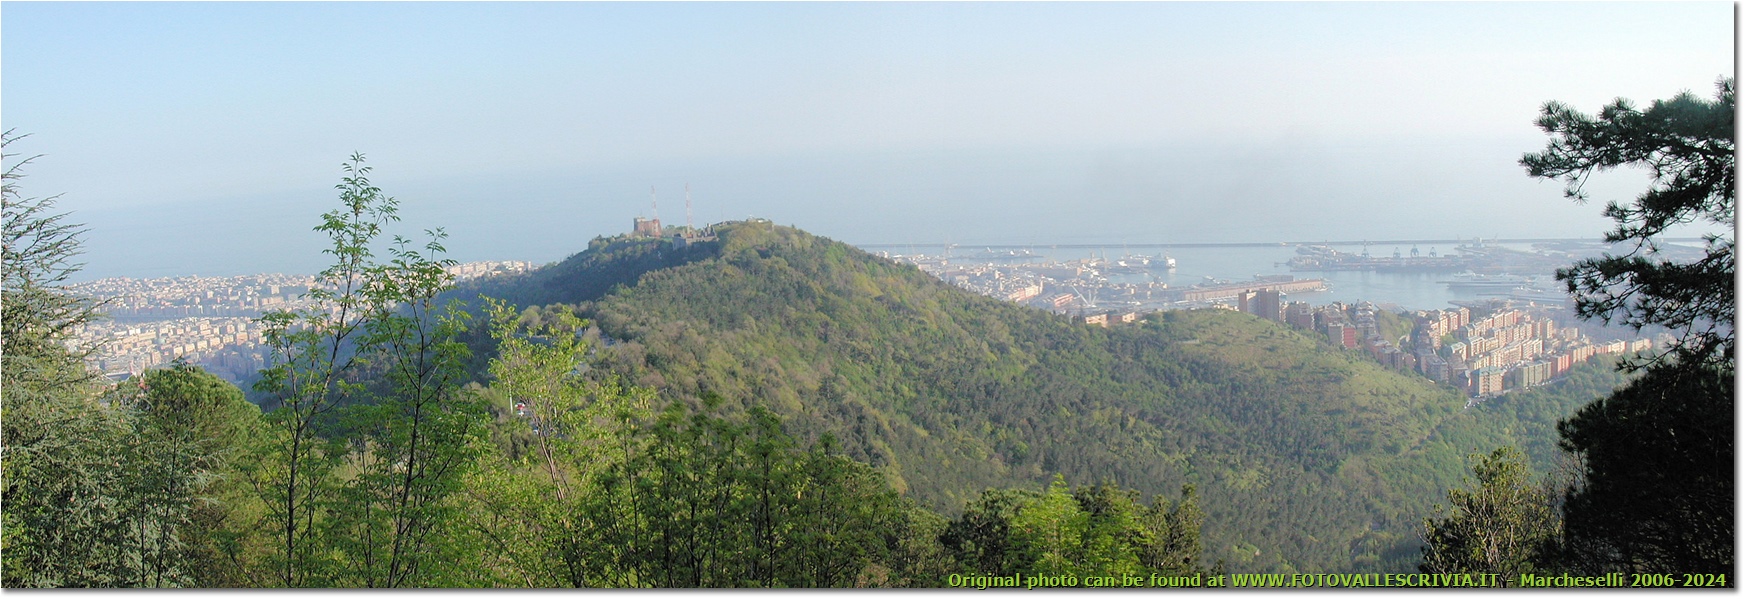 Il Castellaccio, il centro e il porto di Genova: panorama dal forte Puin - Genova - 2006 - Panorami - Foto varie - Olympus Camedia 3000